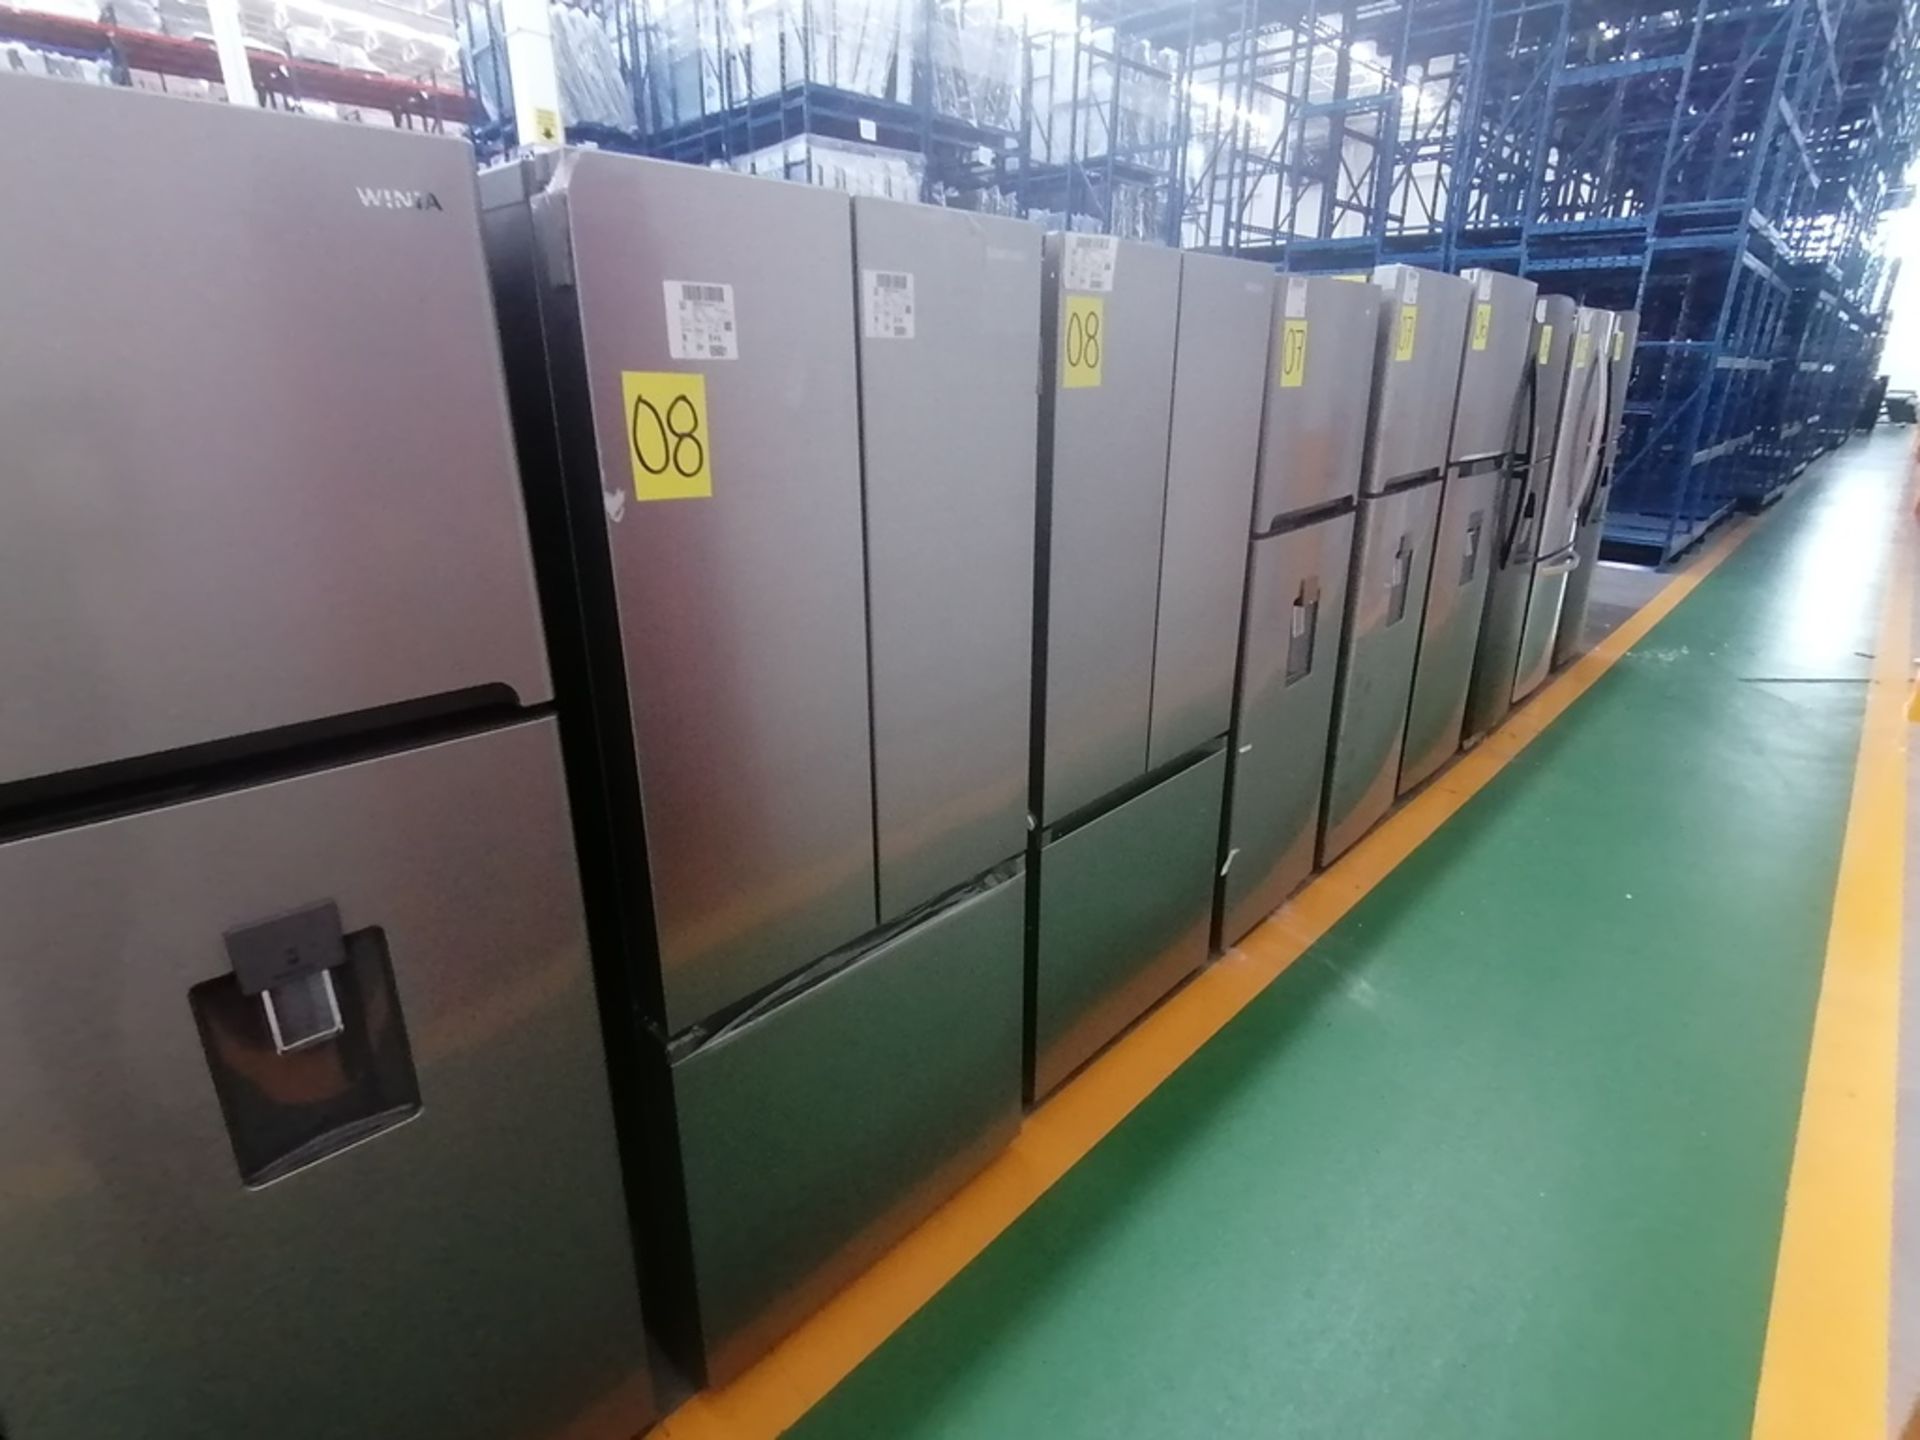 Lote de 2 refrigeradores incluye: 1 Refrigerador, Marca Samsung, Modelo RT22A401059, Serie 0BA84BBR - Image 6 of 15